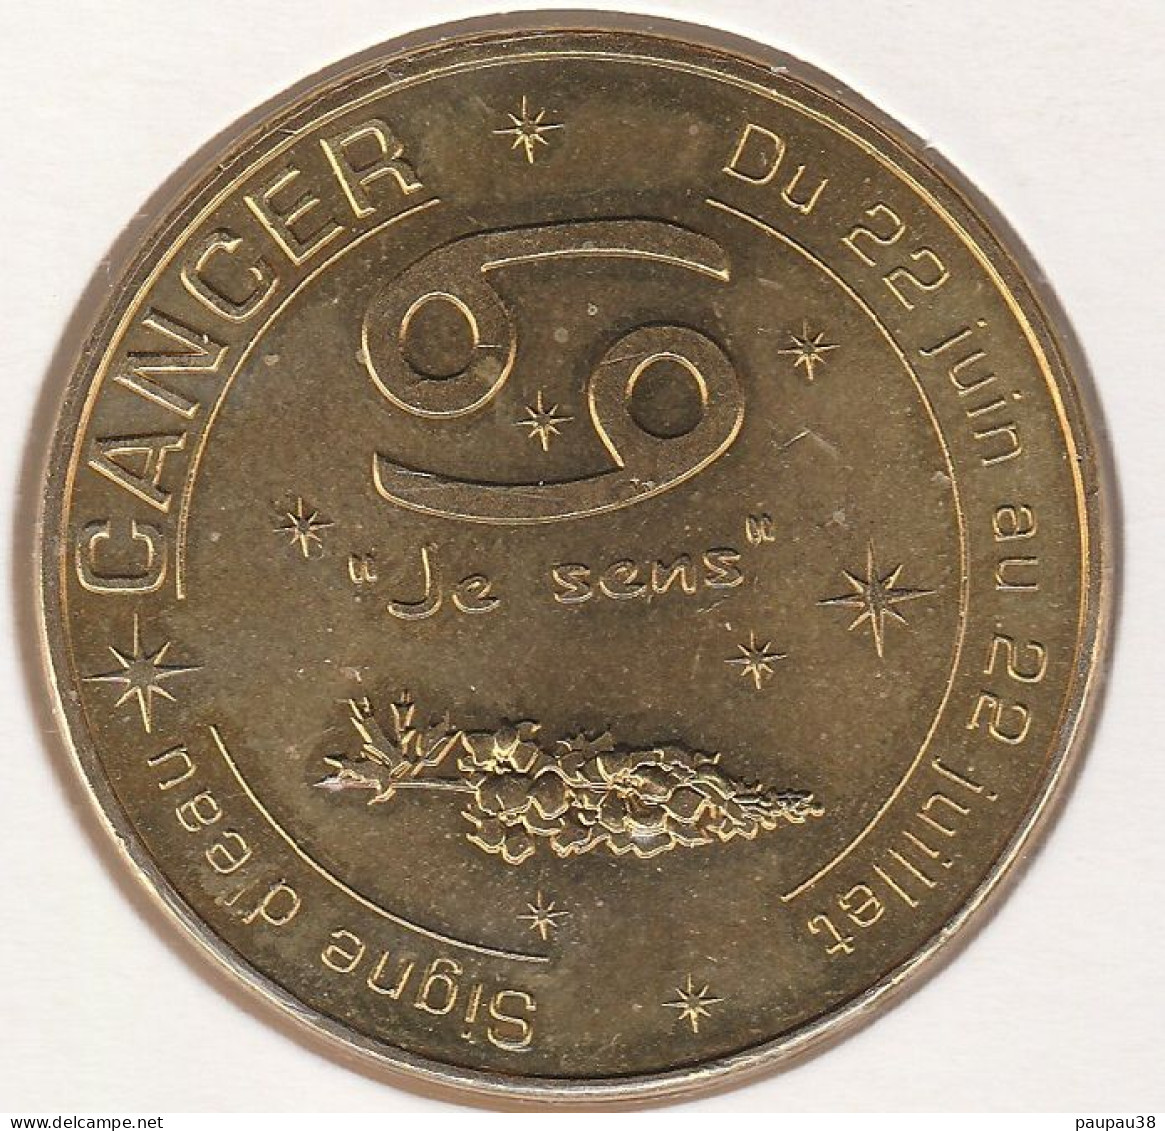 MONNAIE DE PARIS 2015 - 13 AUBAGNE Cancer - Signe D'eau - Du 22 Juin Au 22 Juillet 2015 - 2015